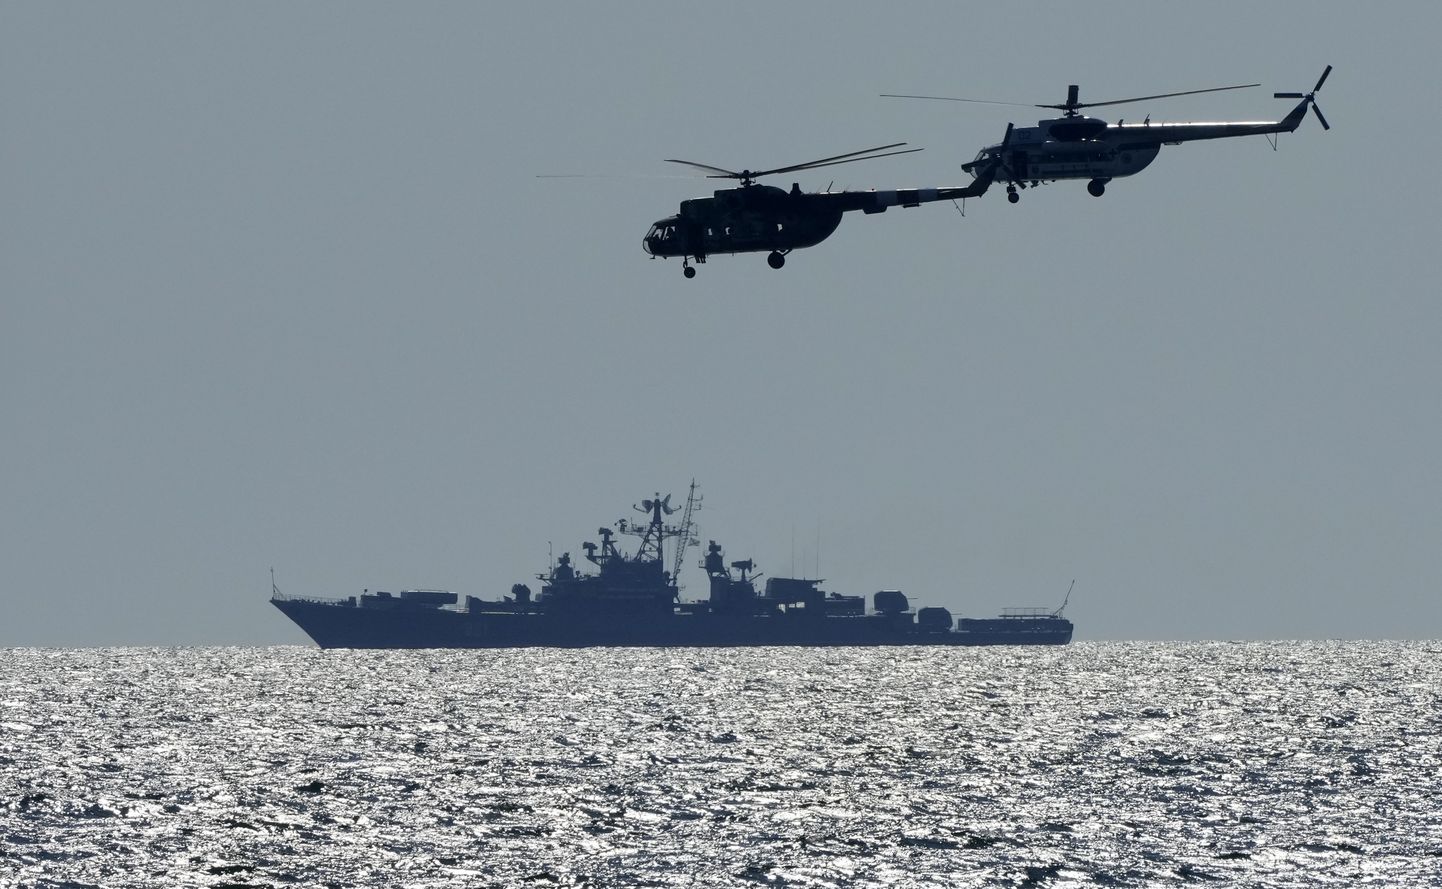 Ukraina helikopterid lendavad 9. juulil 2021 Mustal merel mööda Venemaa sõjalaevast õppuste Sea Breeze 2021 ajal. Tegemis oli Ukraina NATO ühisõppustega (AP/Efrem Lukatsky)